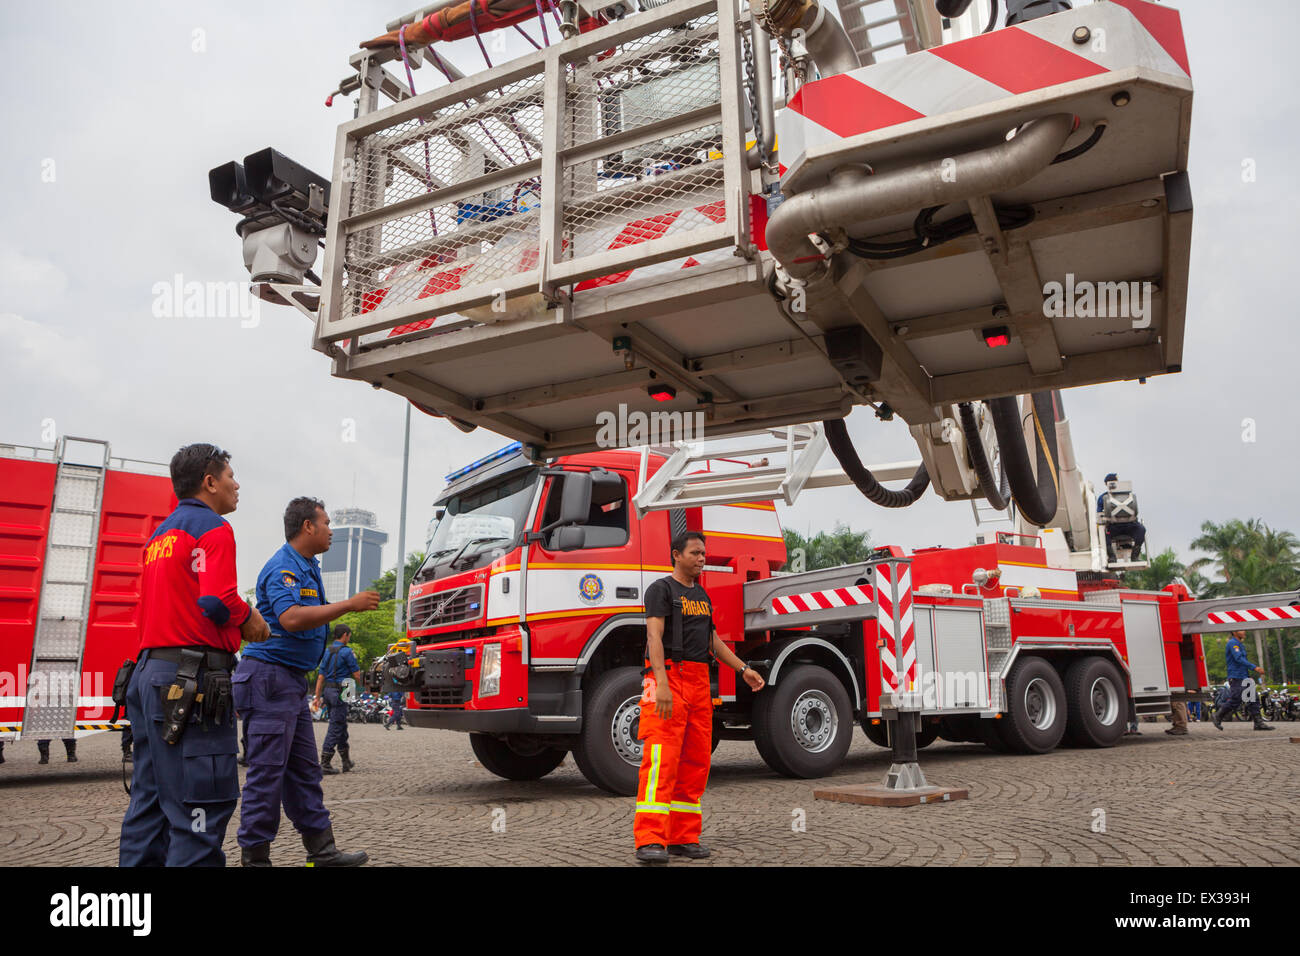 Les pompiers font la démonstration d'un camion de pompiers à échelle tournant au cours d'une répétition des événements de la brigade des pompiers de Jakarta à Jakarta, en Indonésie. Banque D'Images